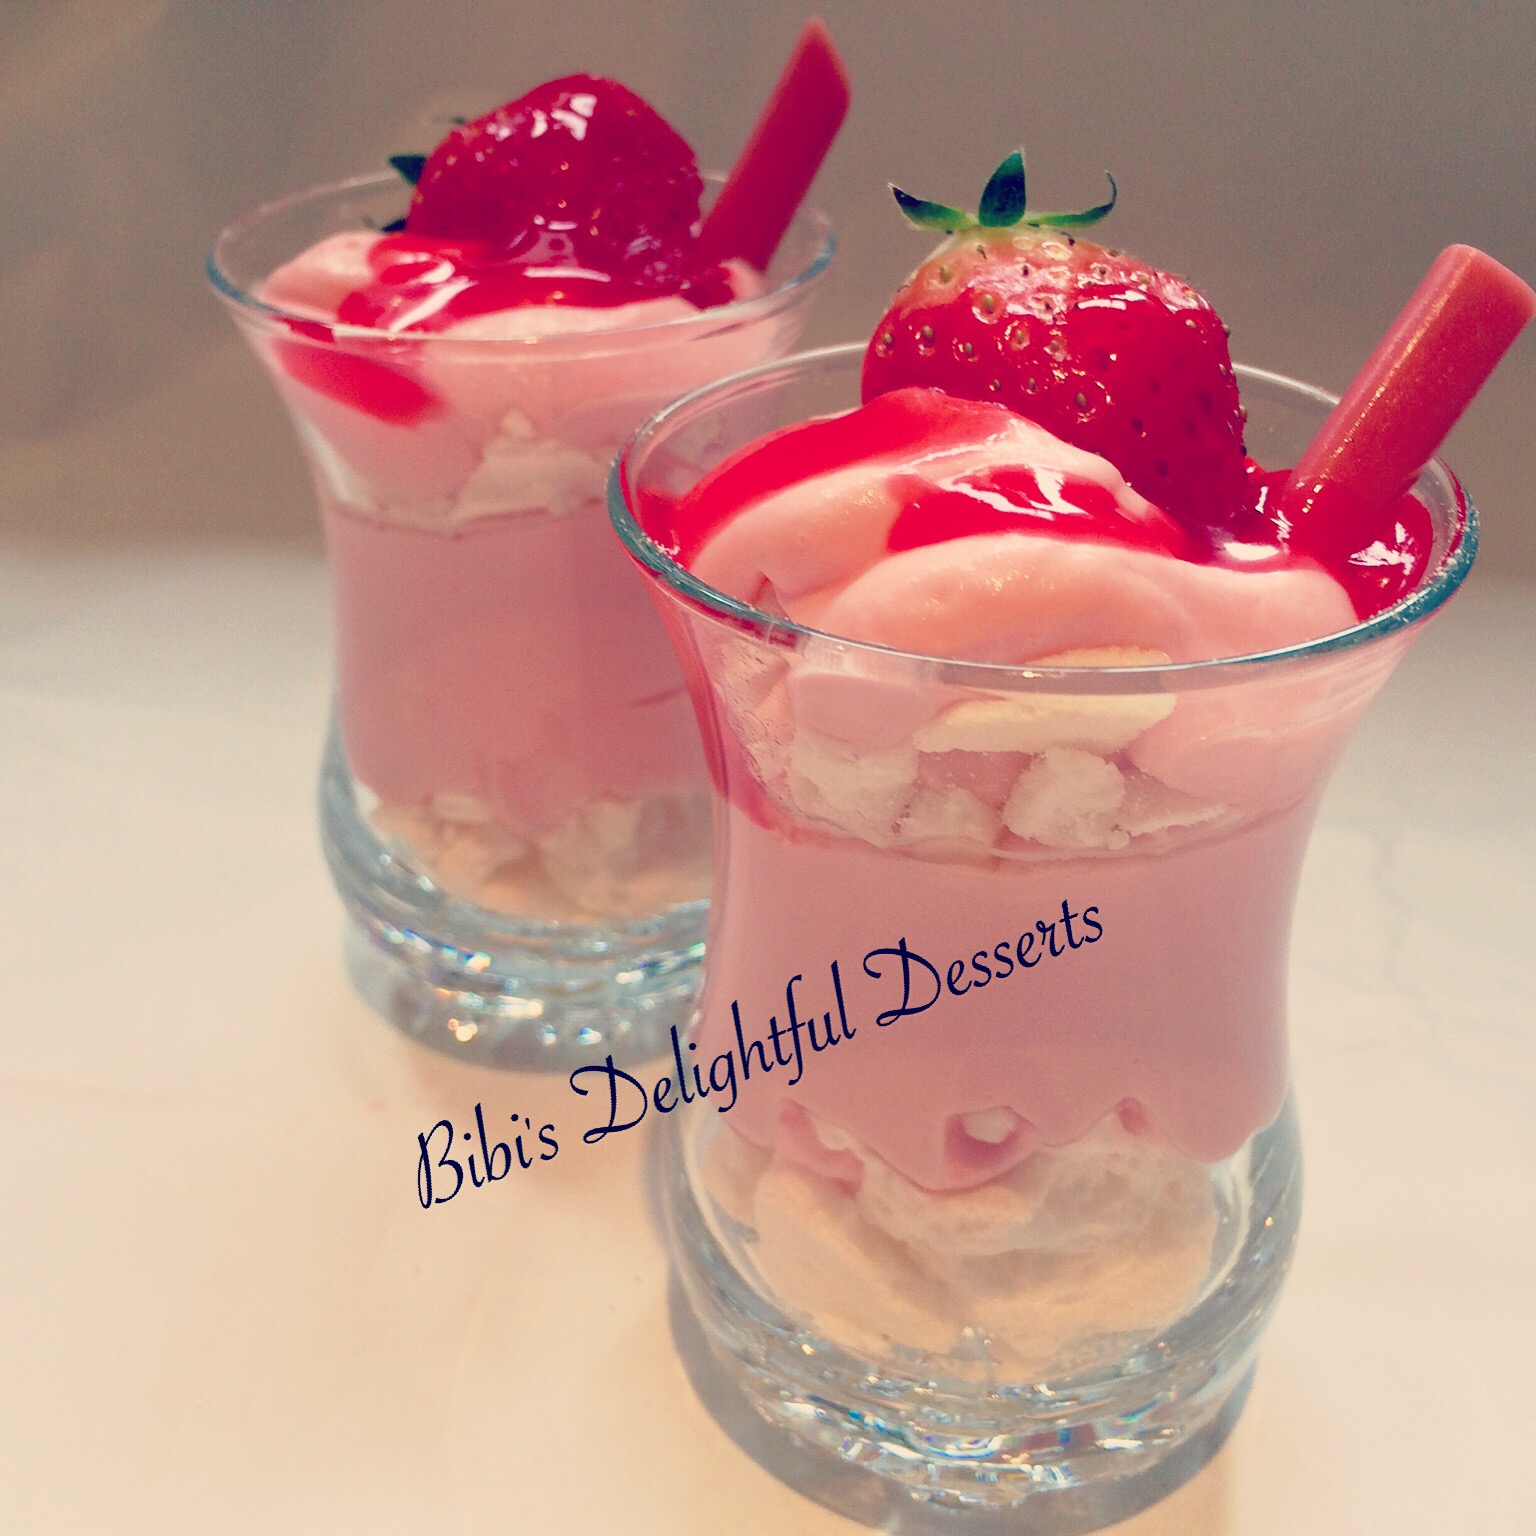 Strawberry verrines – bibis delightful desserts